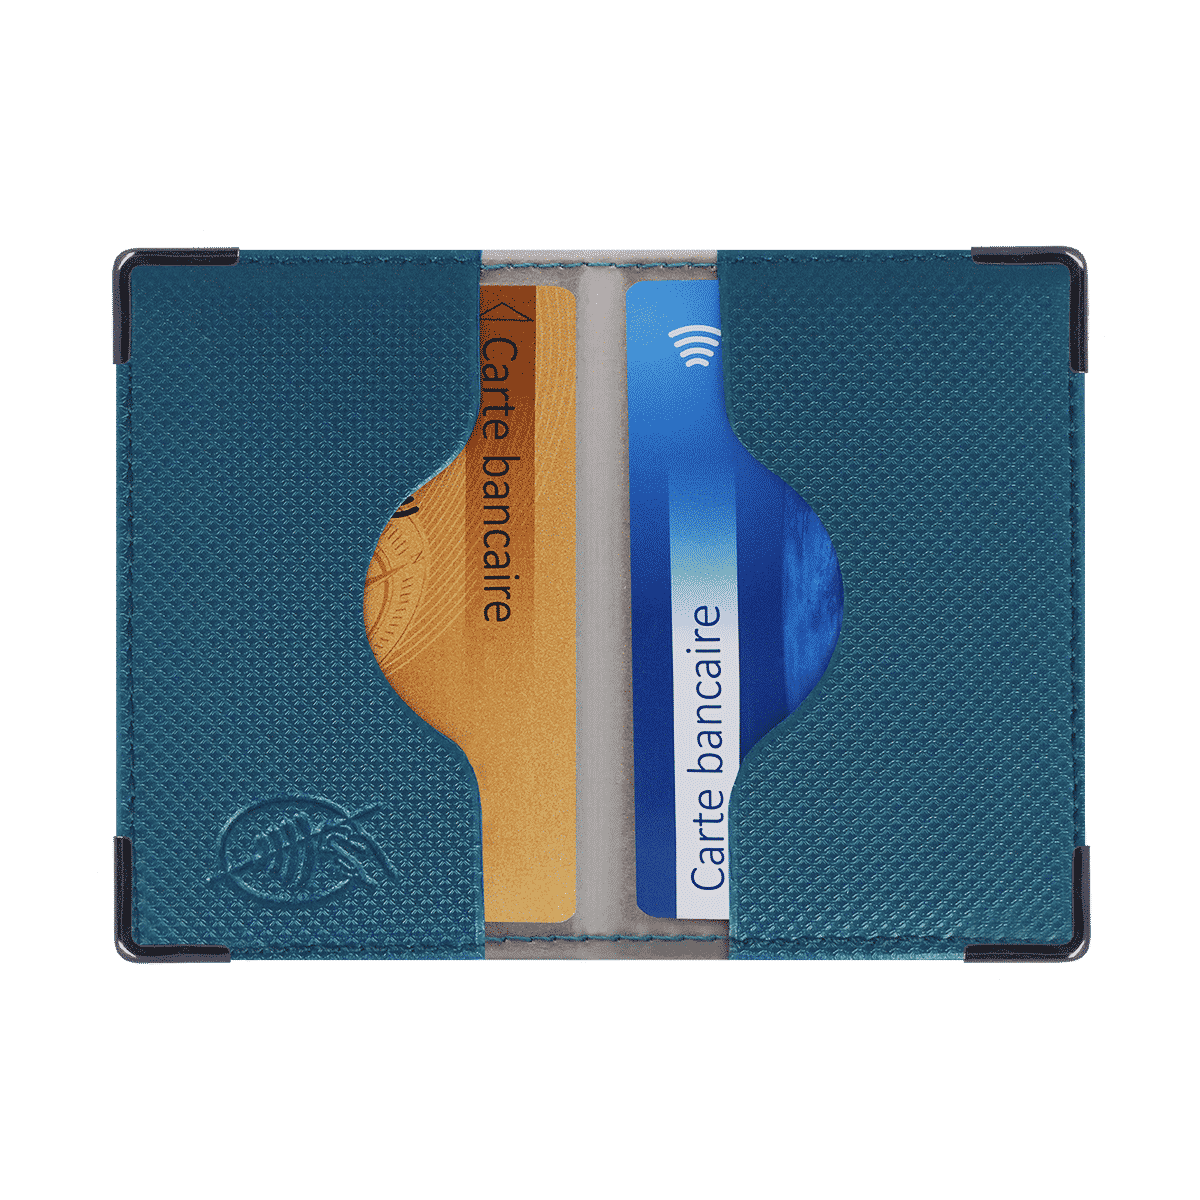 Anti-RFID en PVC Protection des données bancaires - Fabrication française Bleu Marine Color pop® Etui 2 Cartes bancaires blindé 9,7 x 6,5 x 0,5 cm 